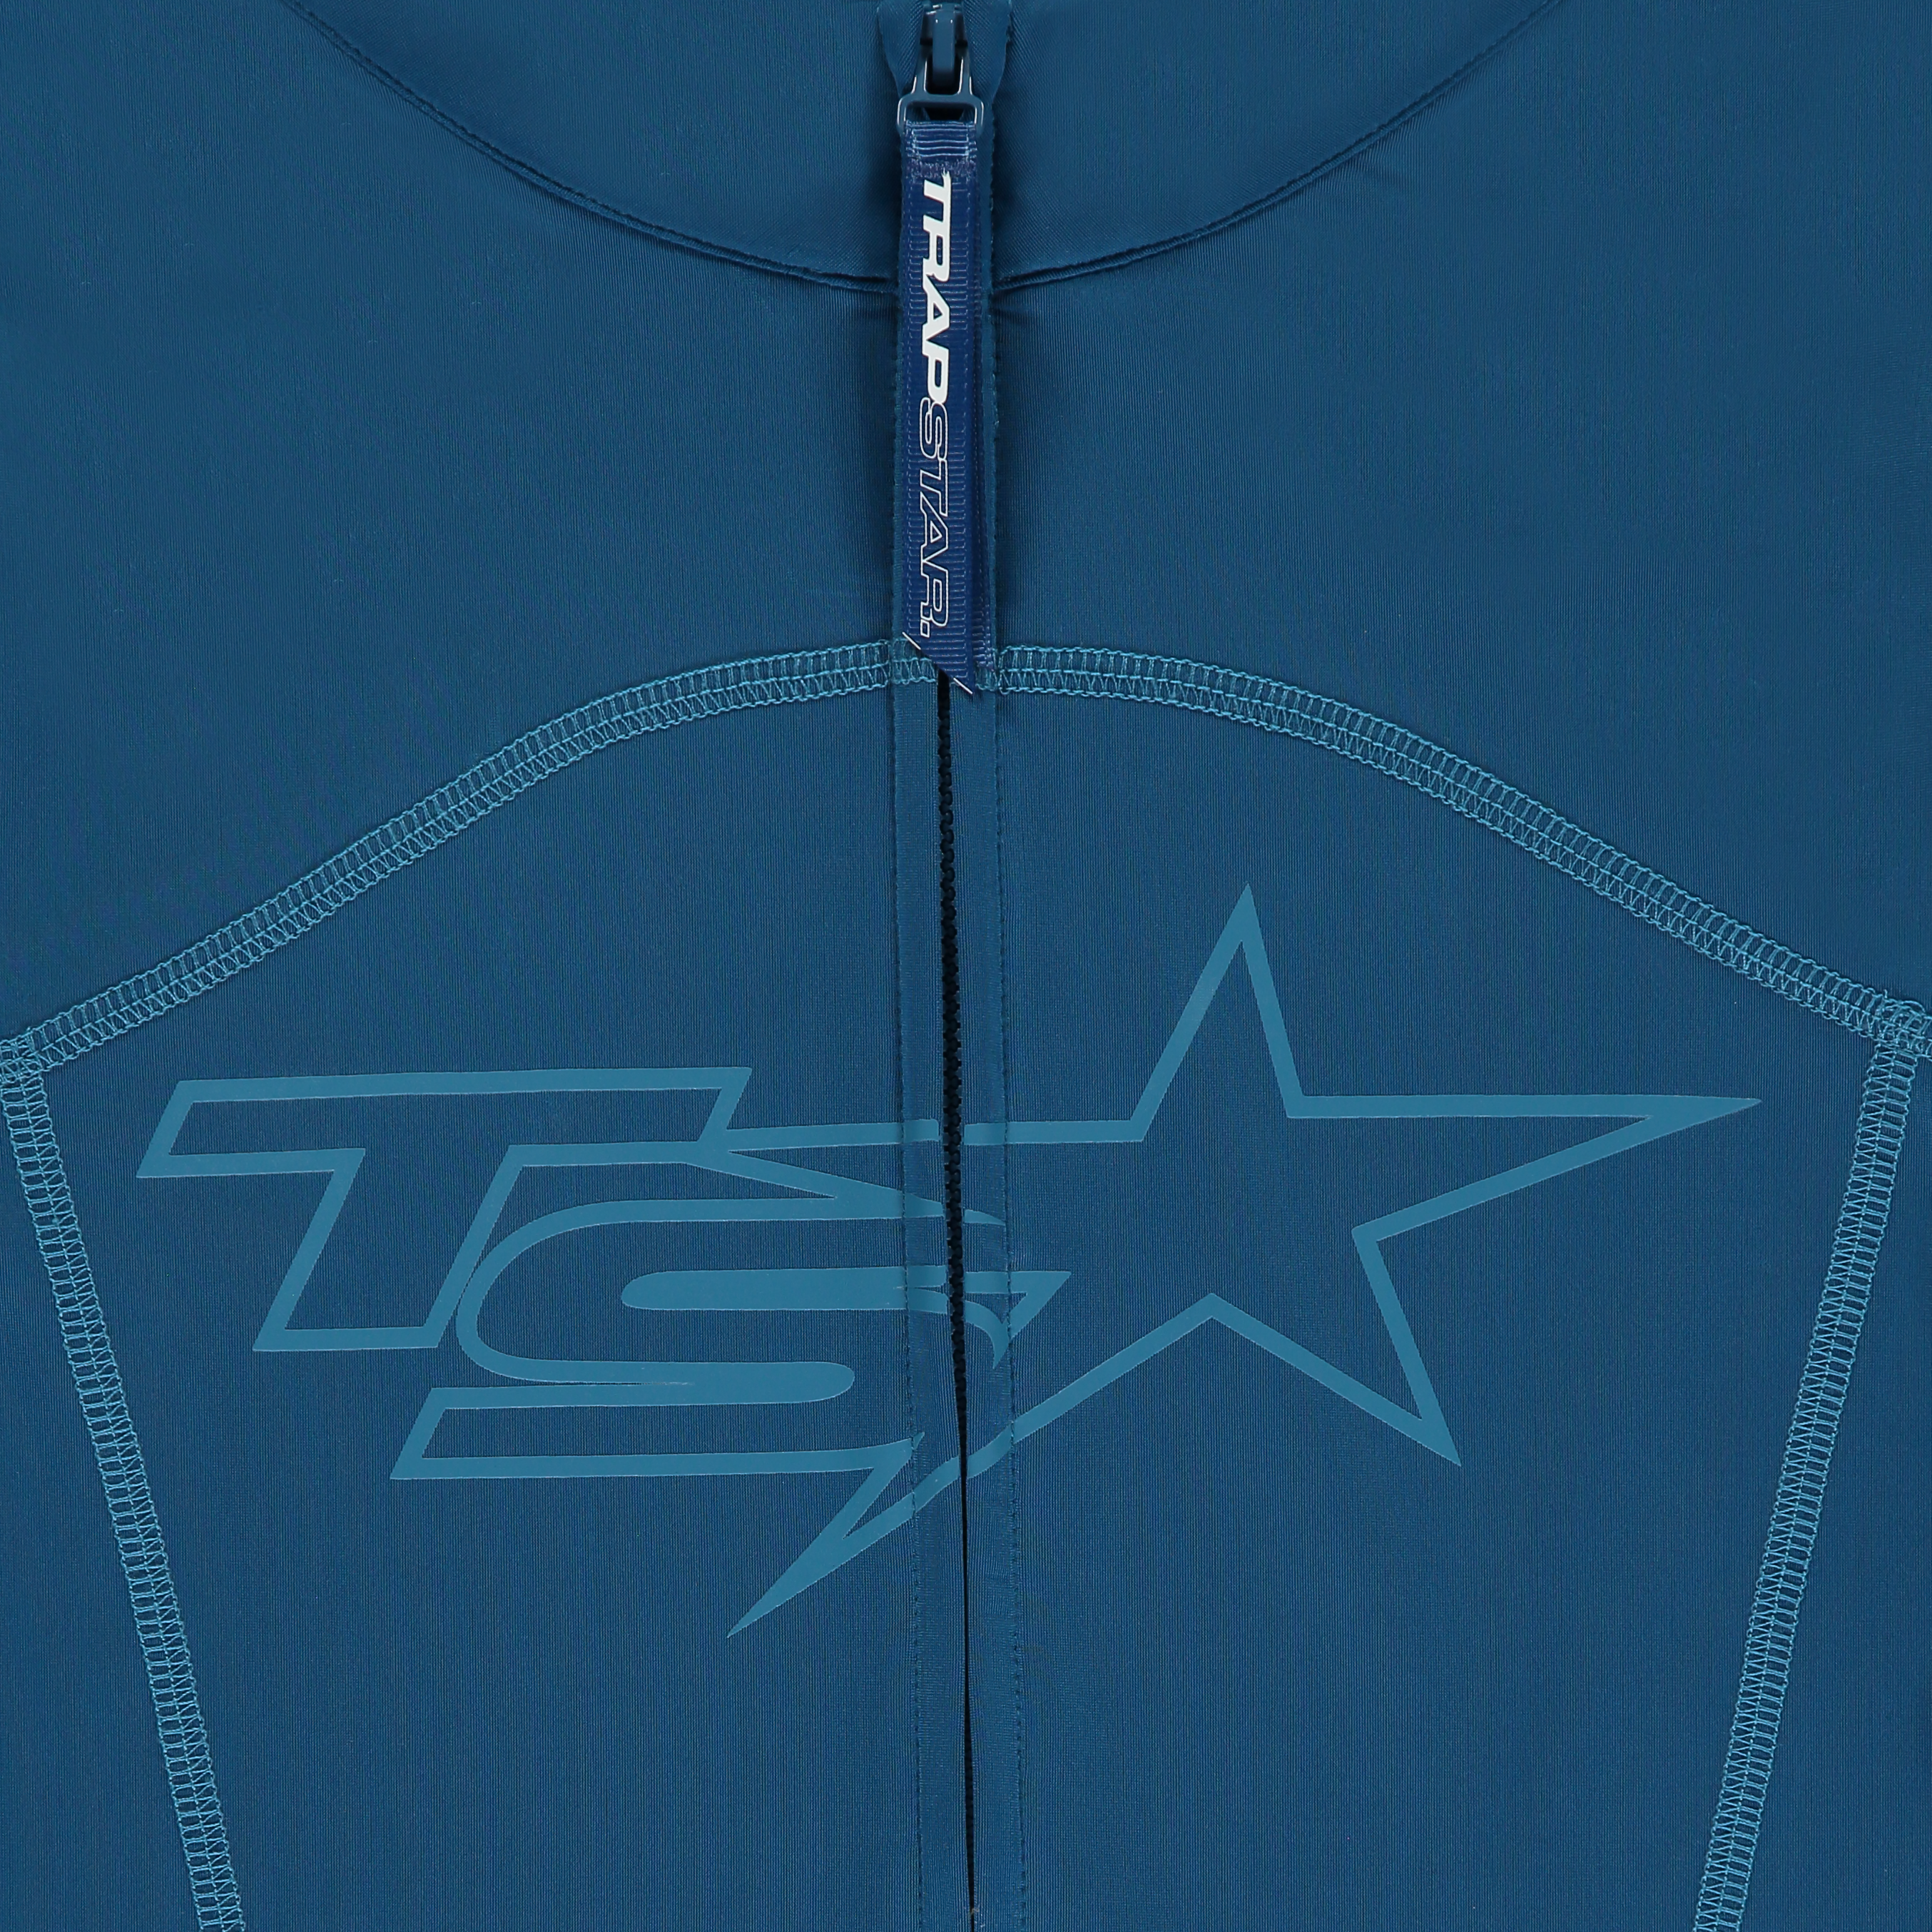 Women's TS-Star Zip Top - Turquoise